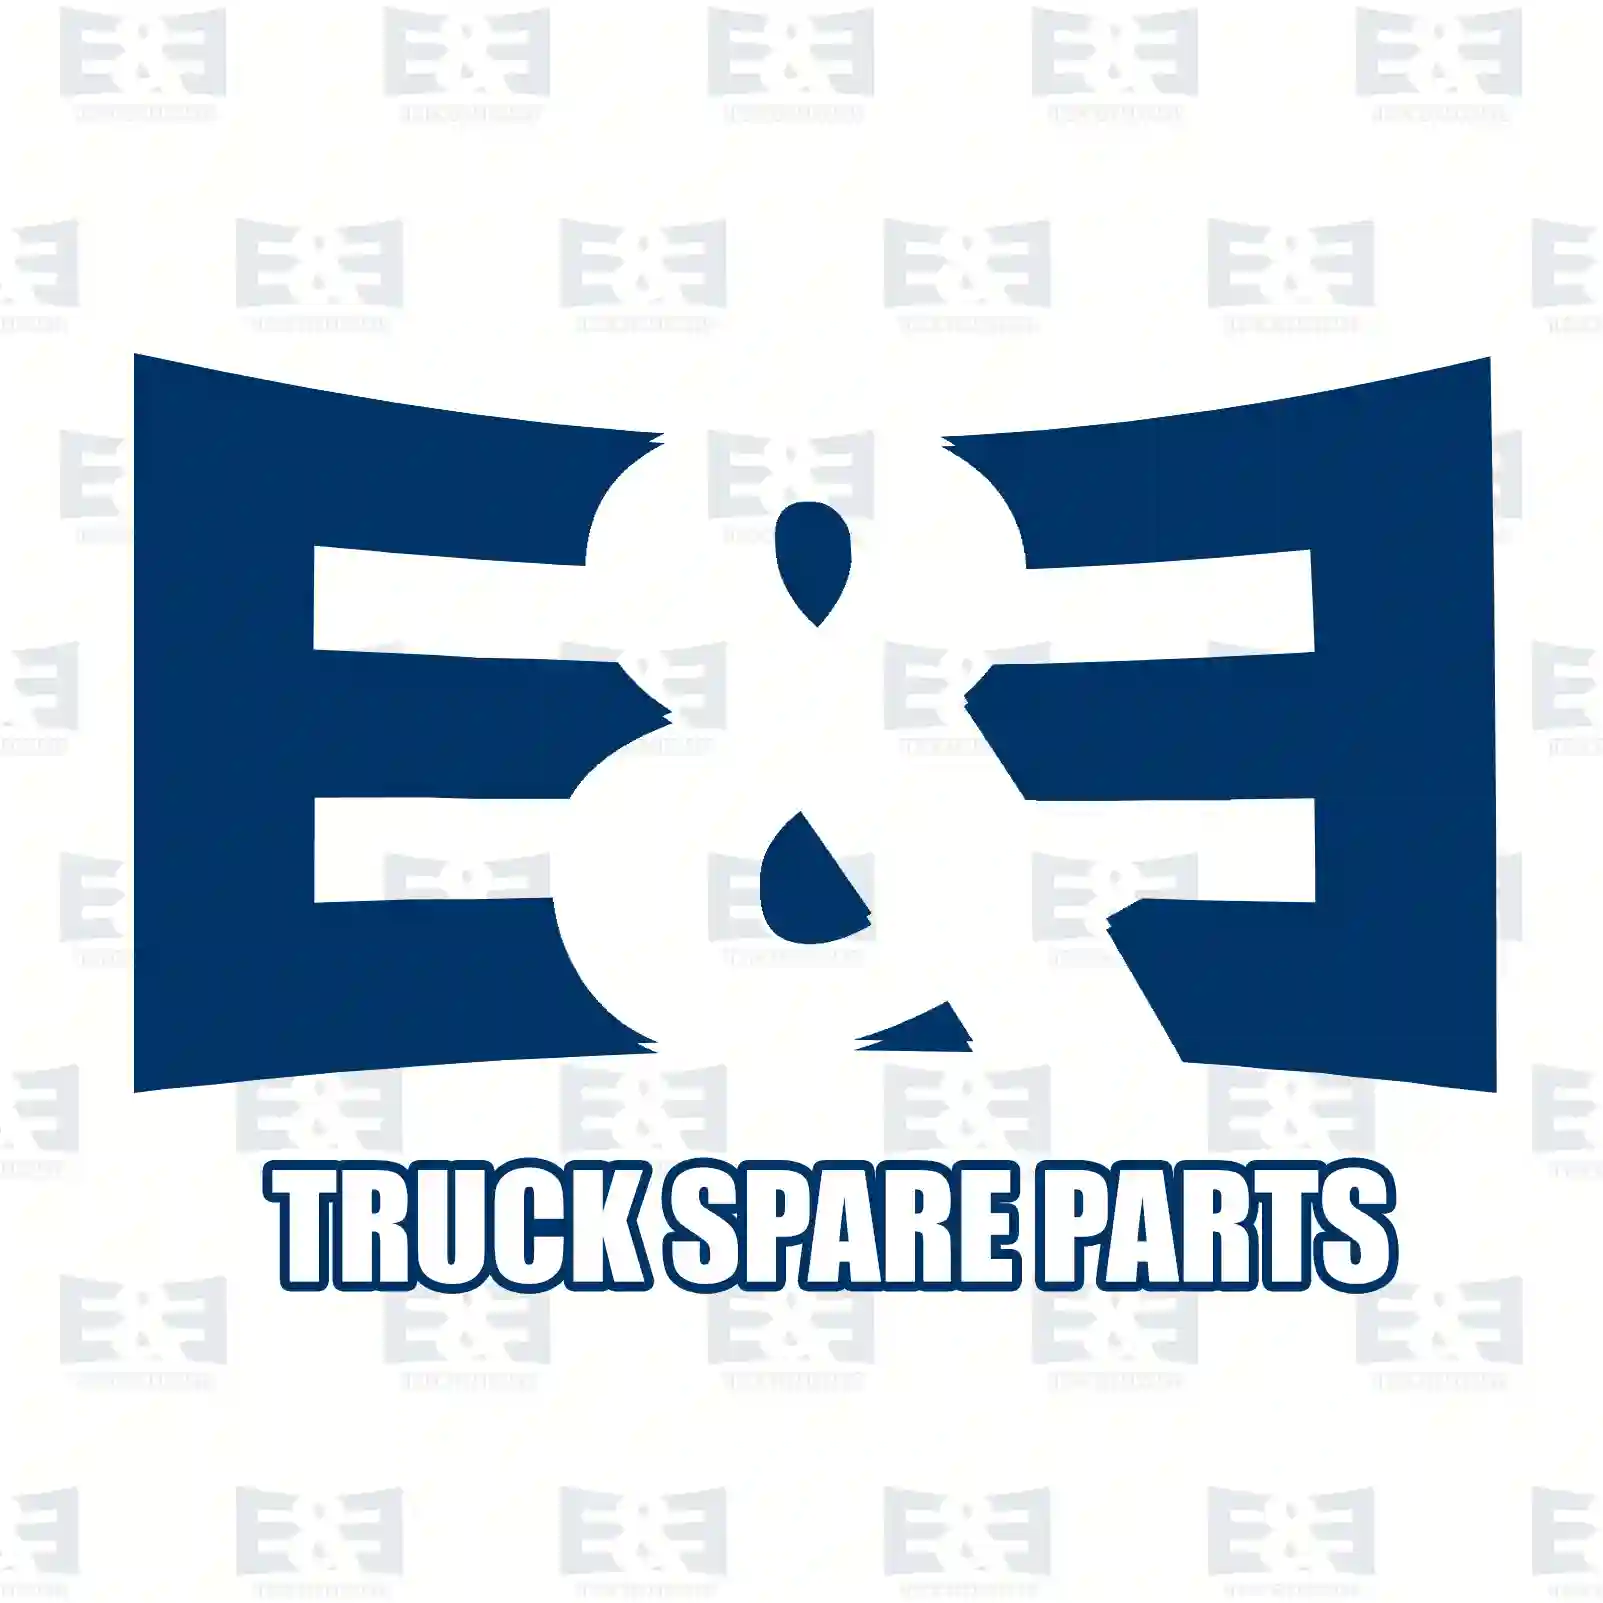 Brake disc, 2E2293929, 02996009, 07187569, 2996009, 7187569, , , , ||  2E2293929 E&E Truck Spare Parts | Truck Spare Parts, Auotomotive Spare Parts Brake disc, 2E2293929, 02996009, 07187569, 2996009, 7187569, , , , ||  2E2293929 E&E Truck Spare Parts | Truck Spare Parts, Auotomotive Spare Parts